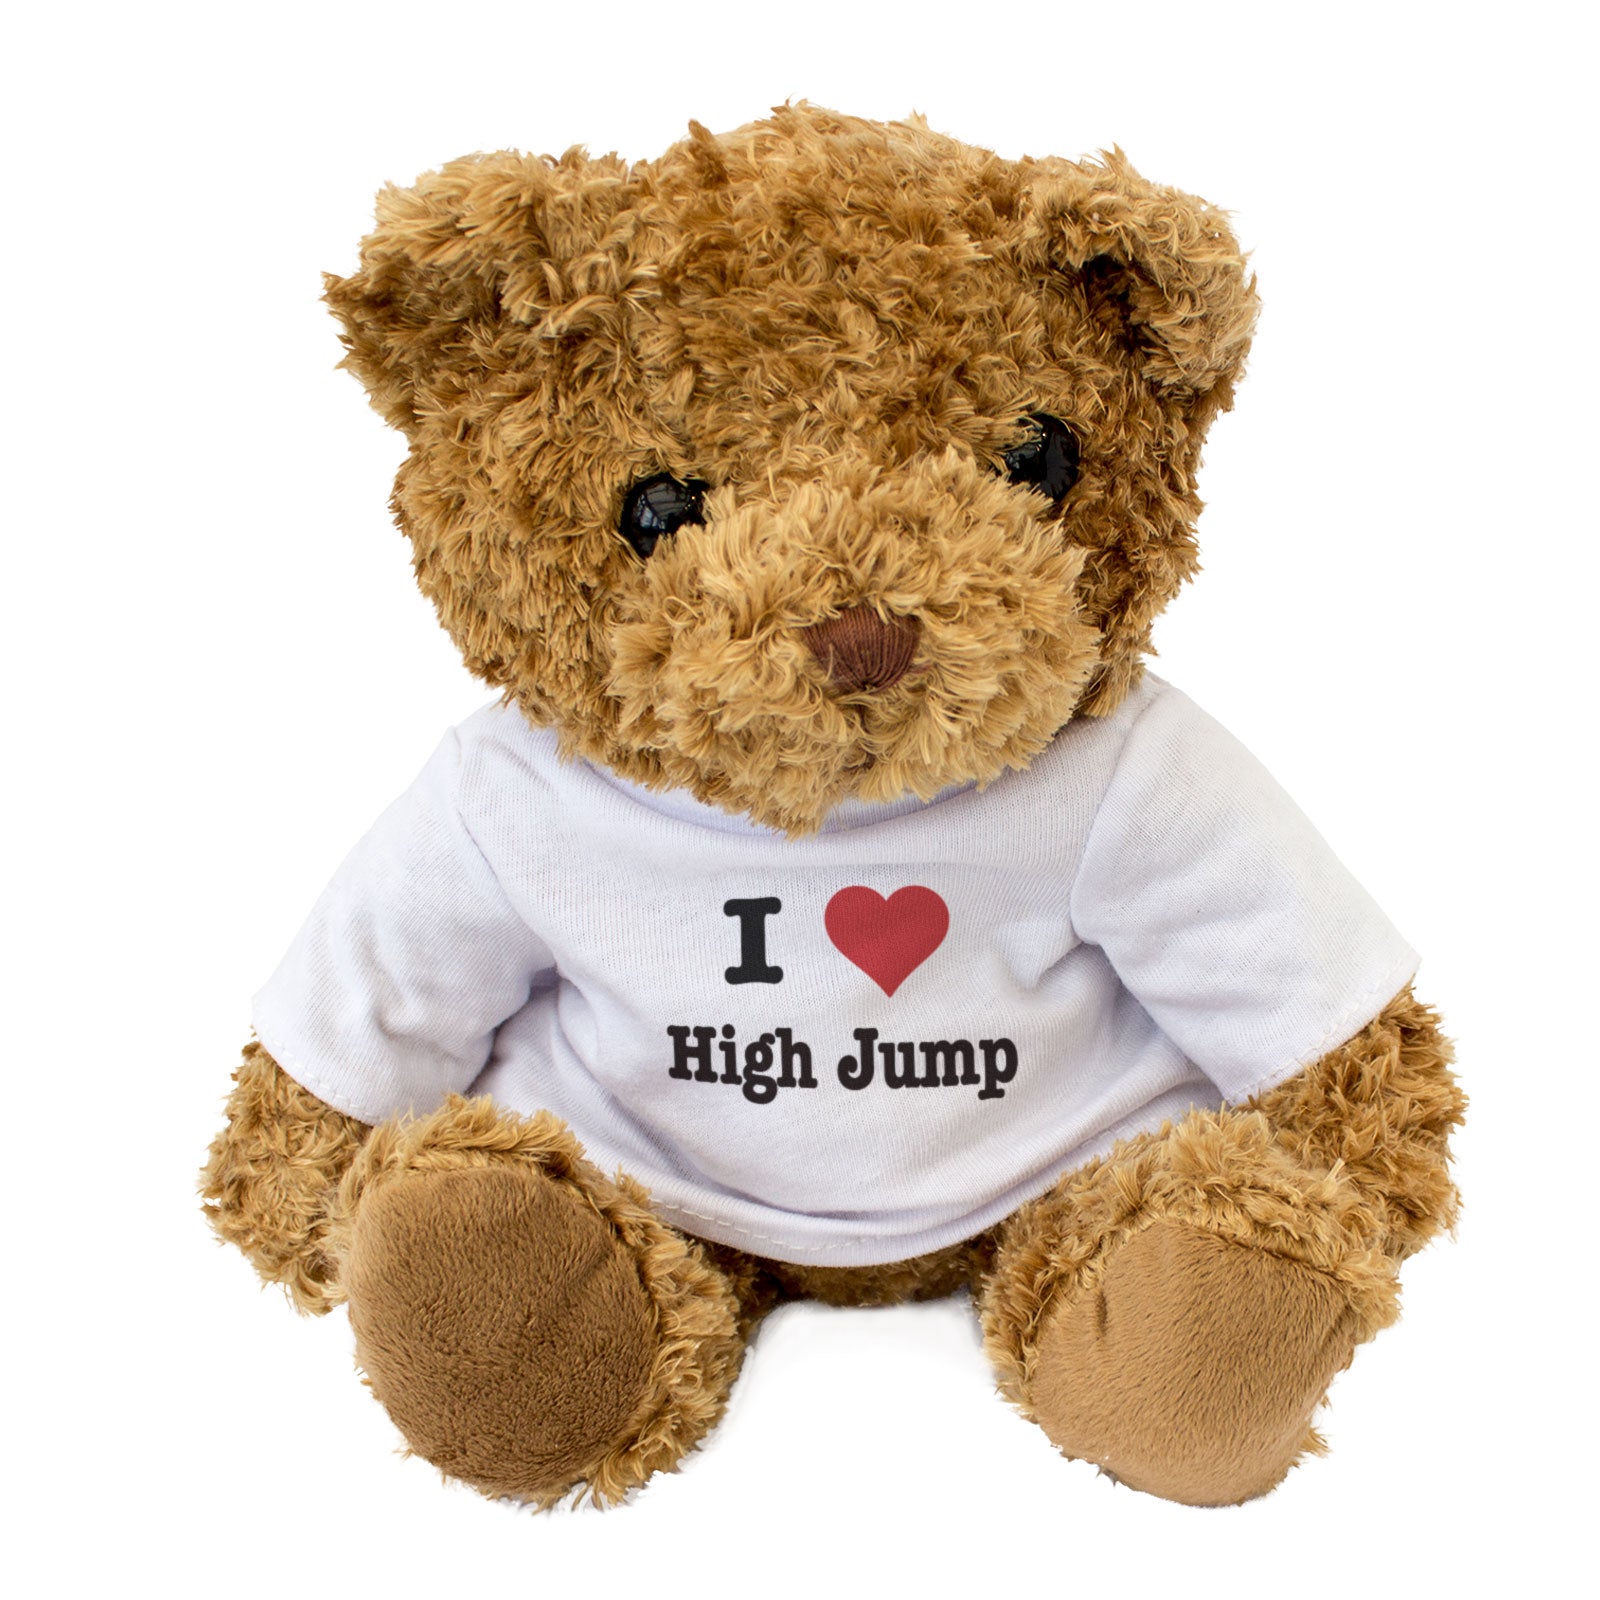 I Love High Jump - Teddy Bear